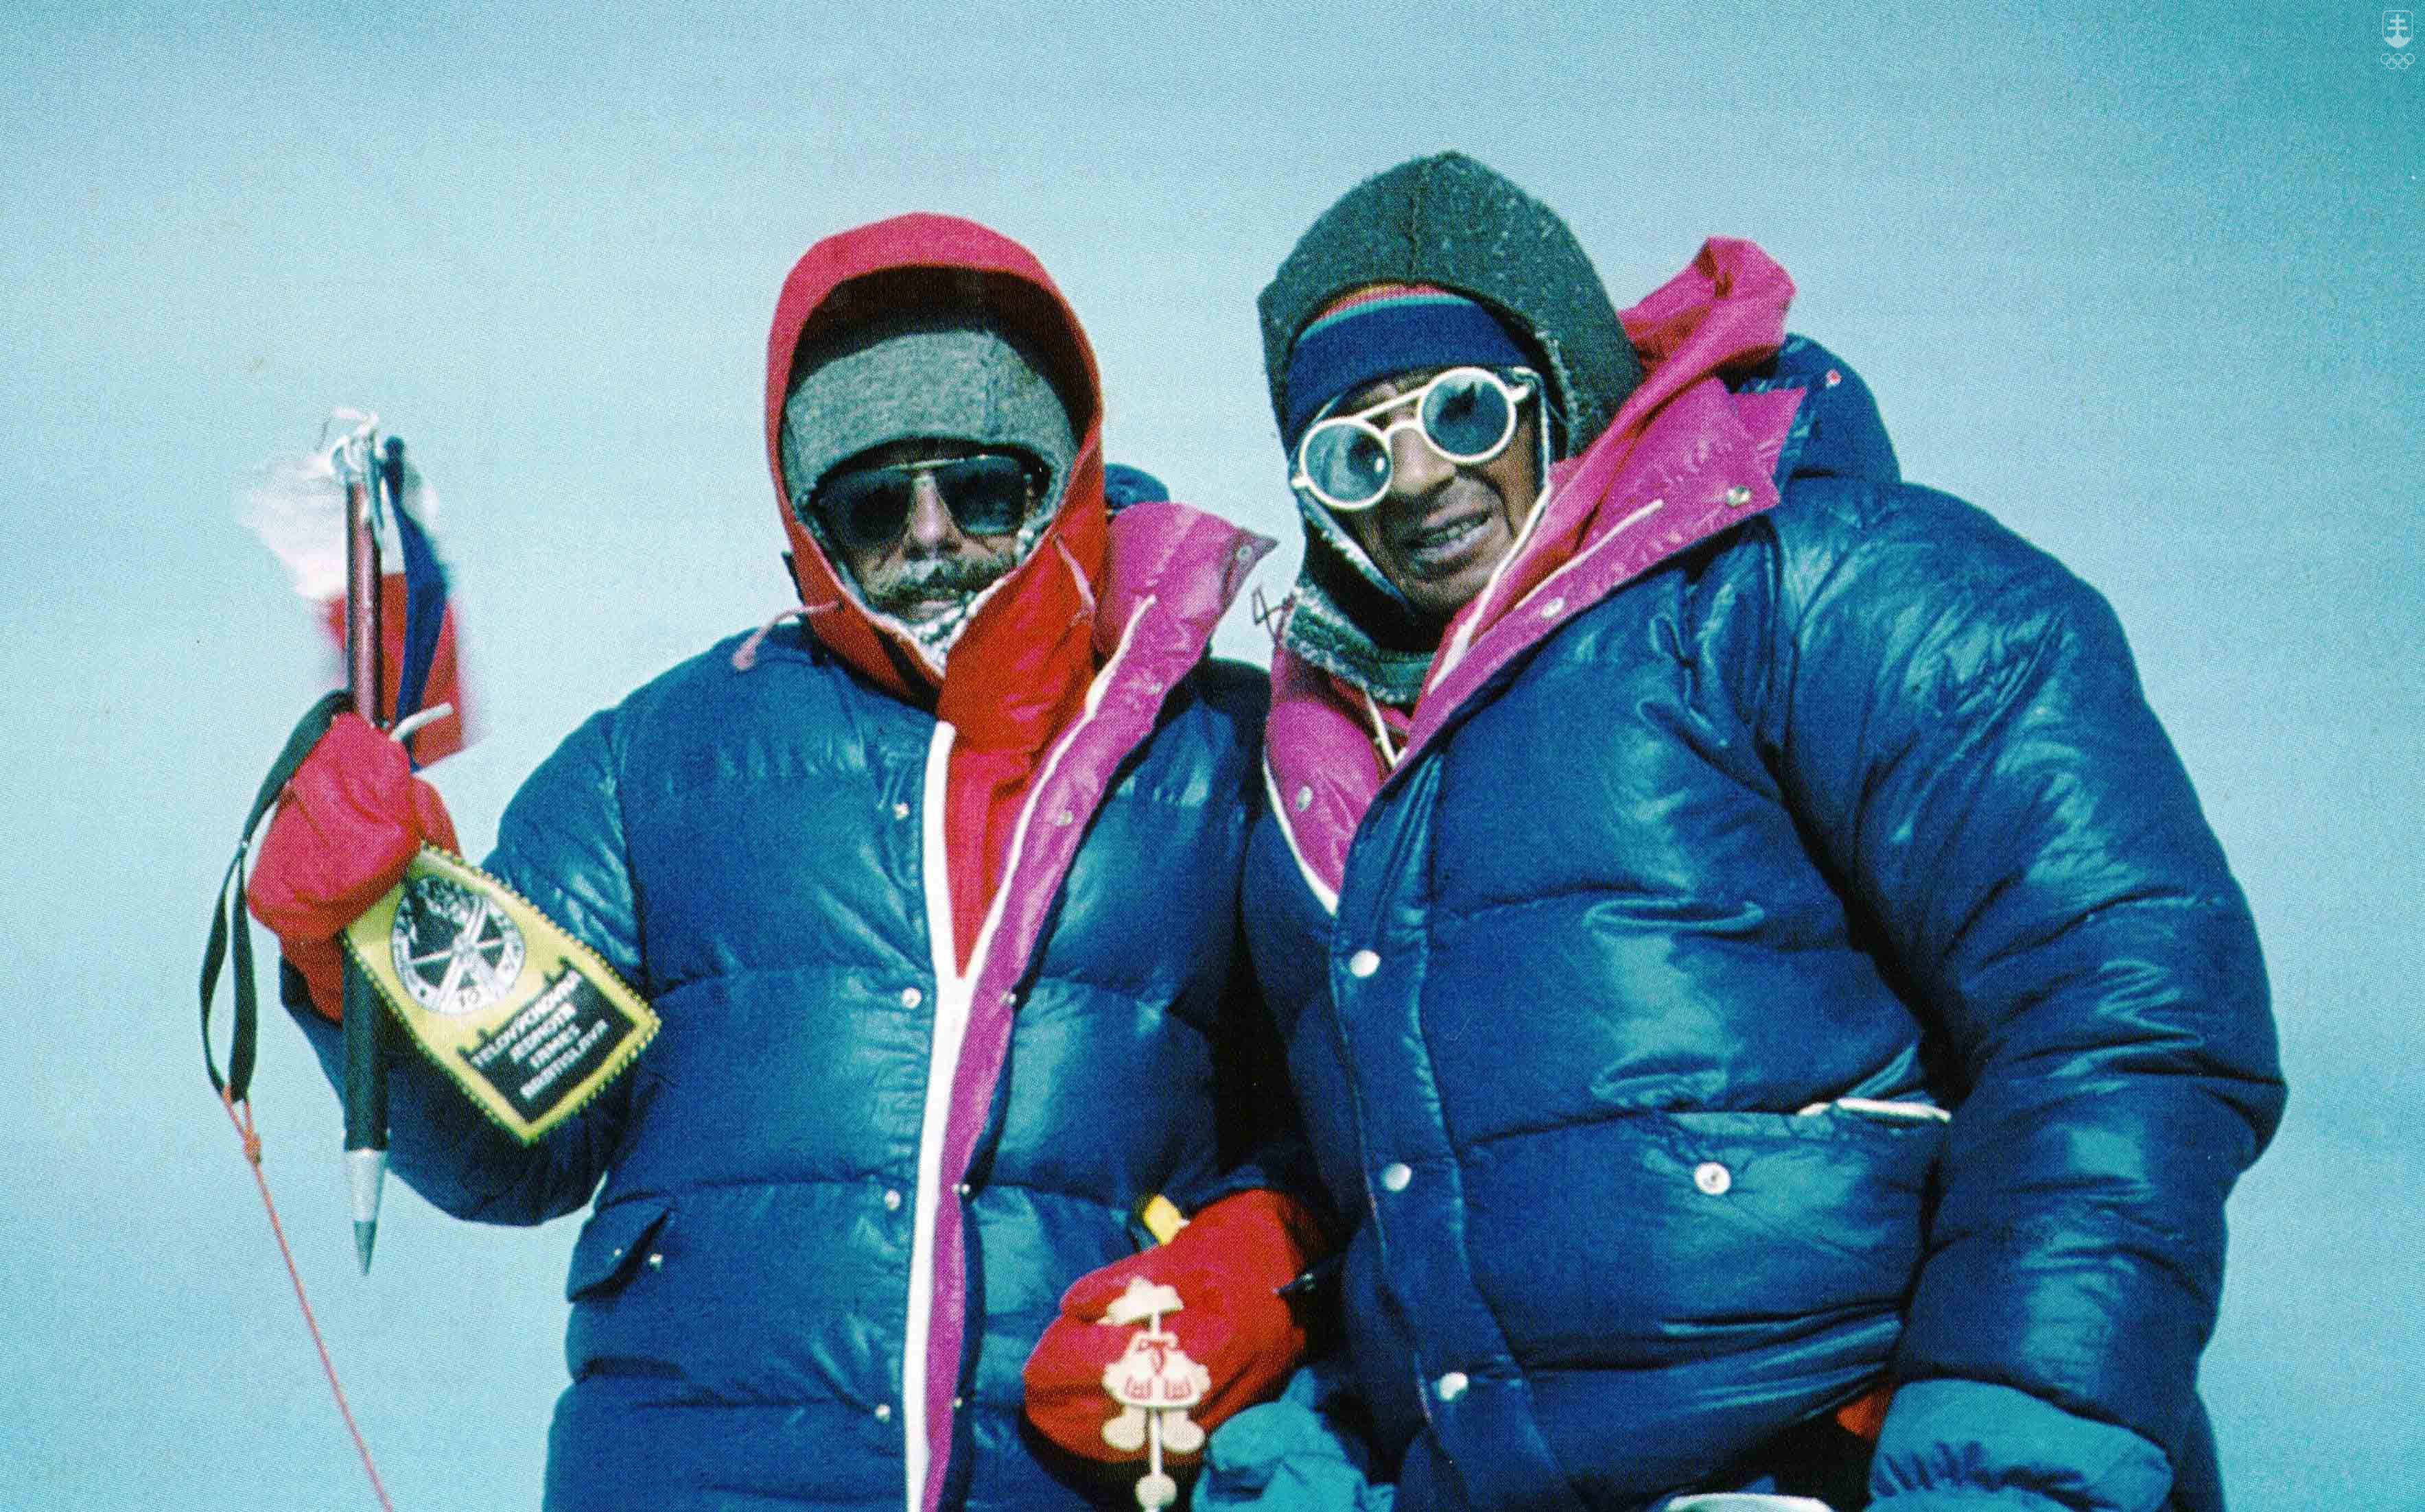 Horolezci Zoltán Demján a Jozef Psotka pred 35 rokmi zdolali ako prví Slováci najvyššiu horu sveta - Mount Everest. 